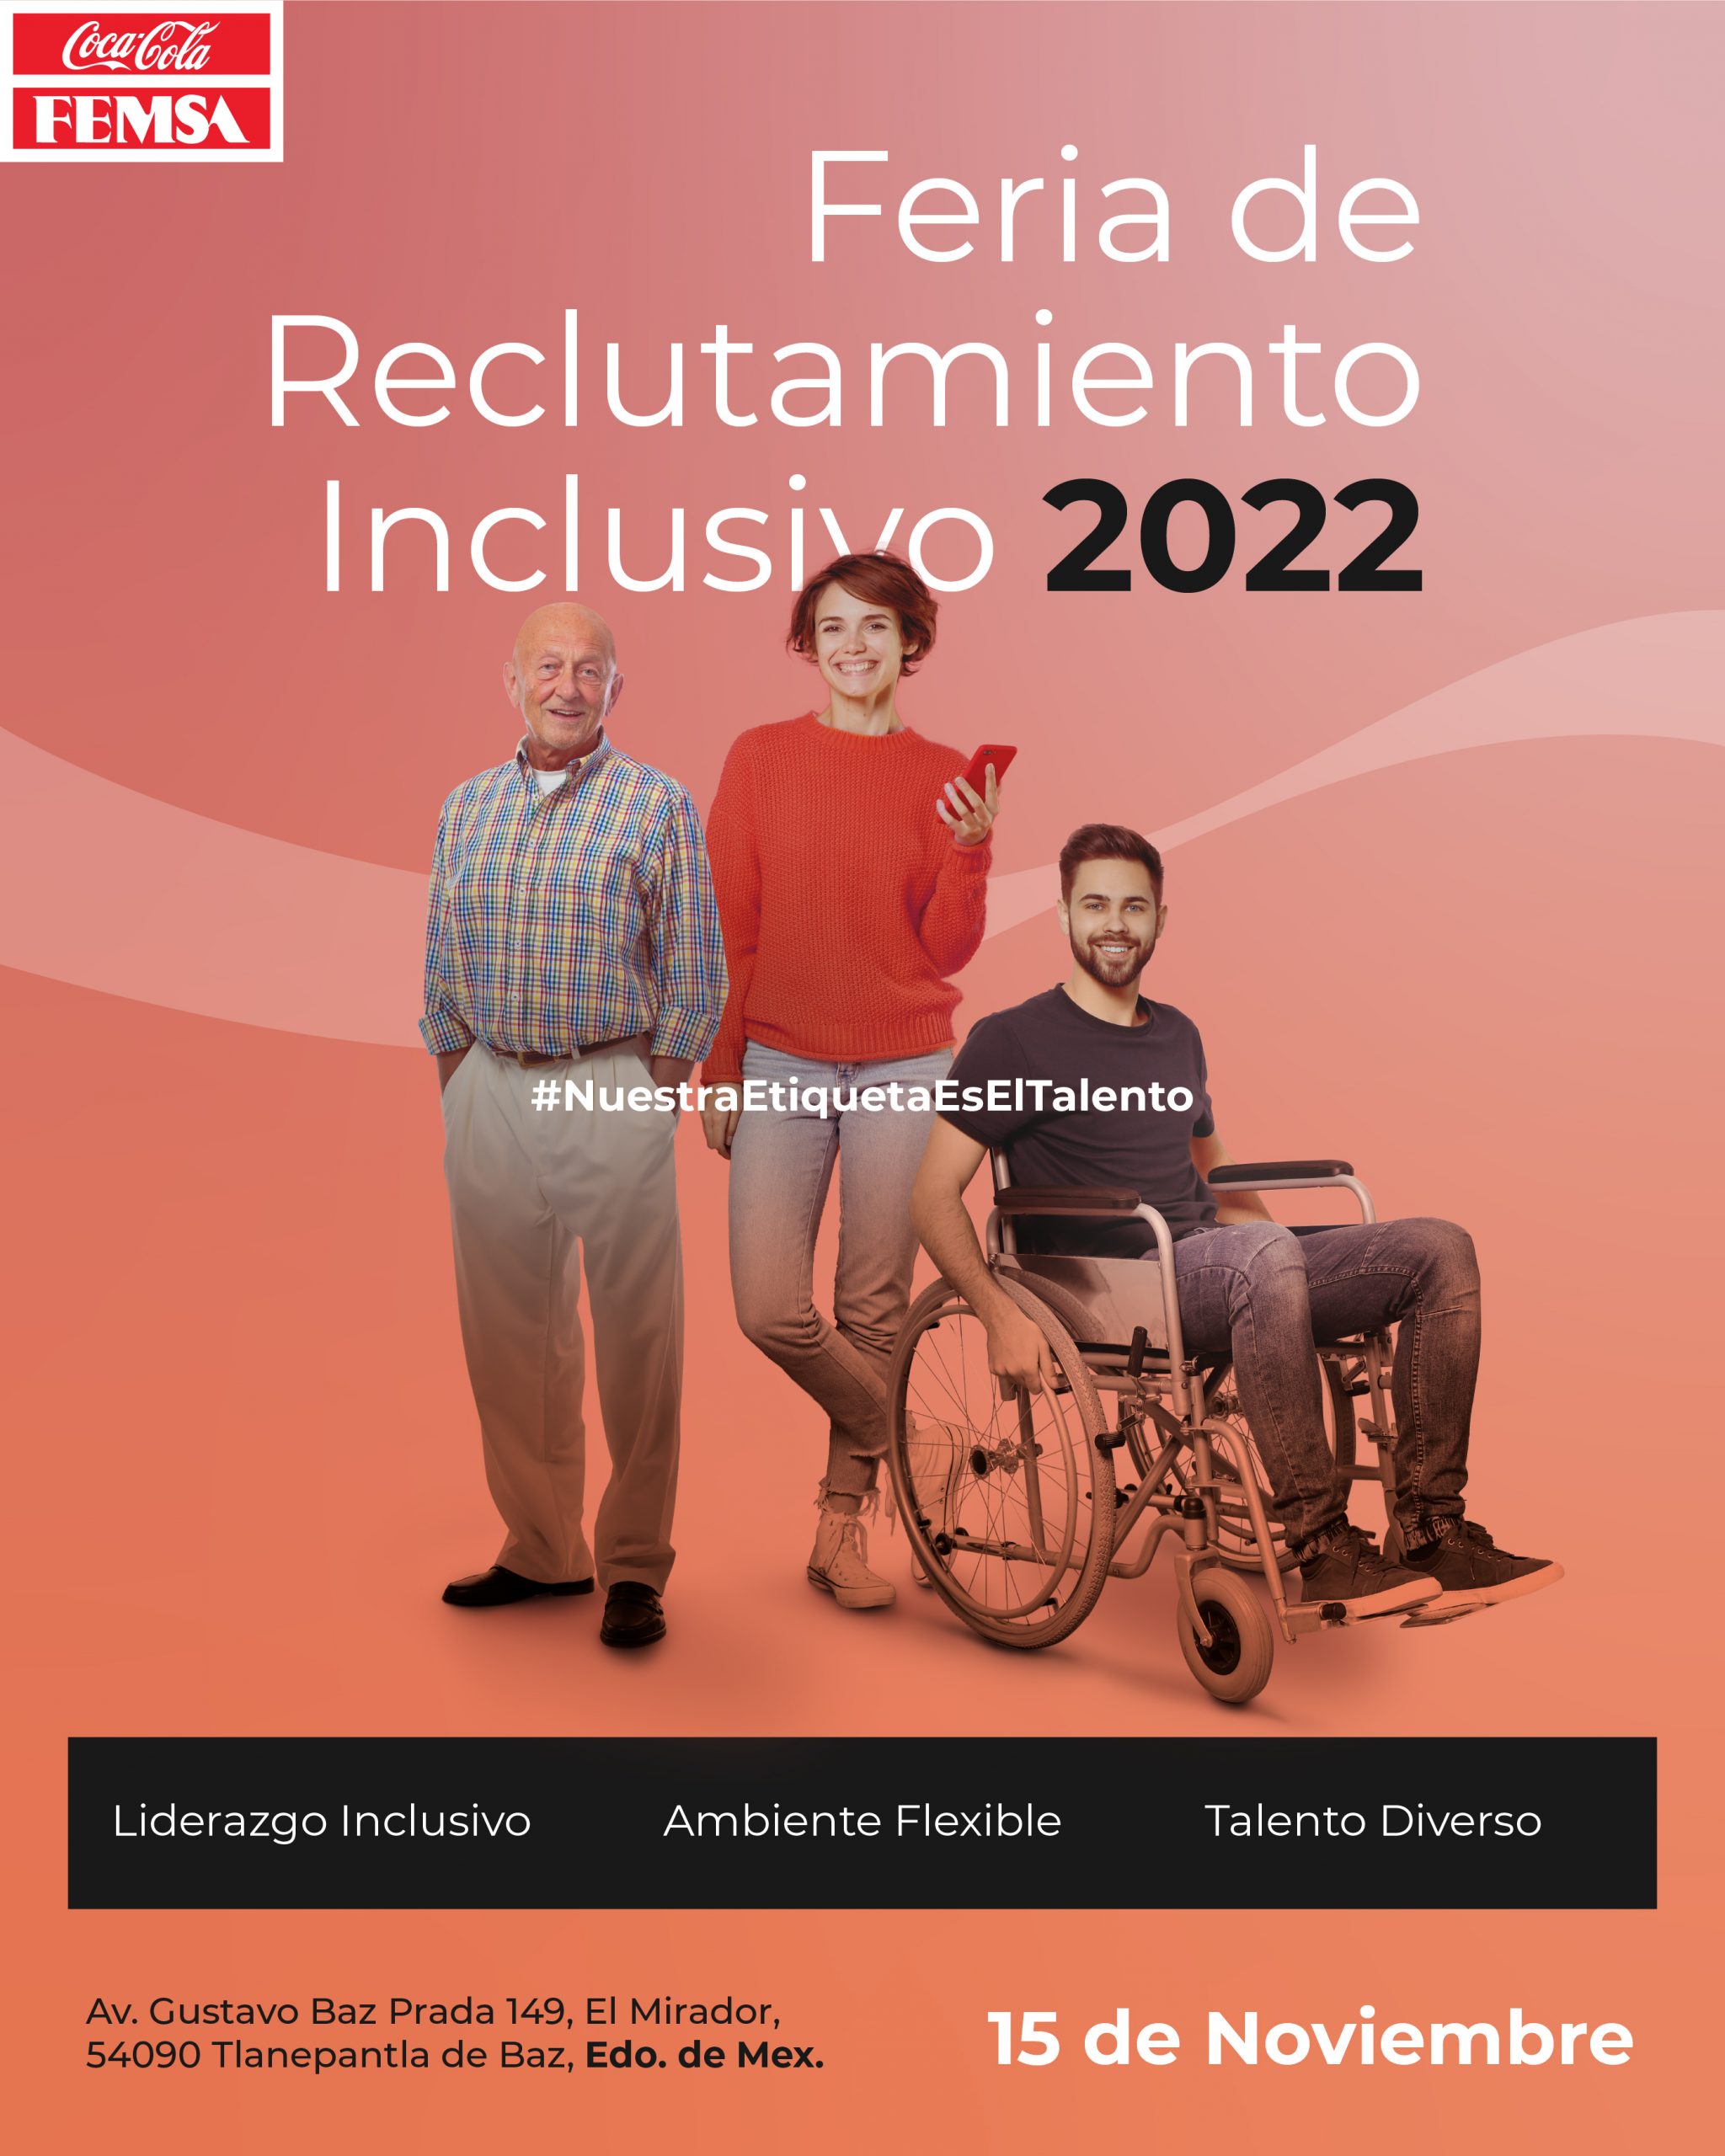 Porque la diversidad nos hace más fuertes, celebramos la Feria del reclutamiento inclusivo 2022